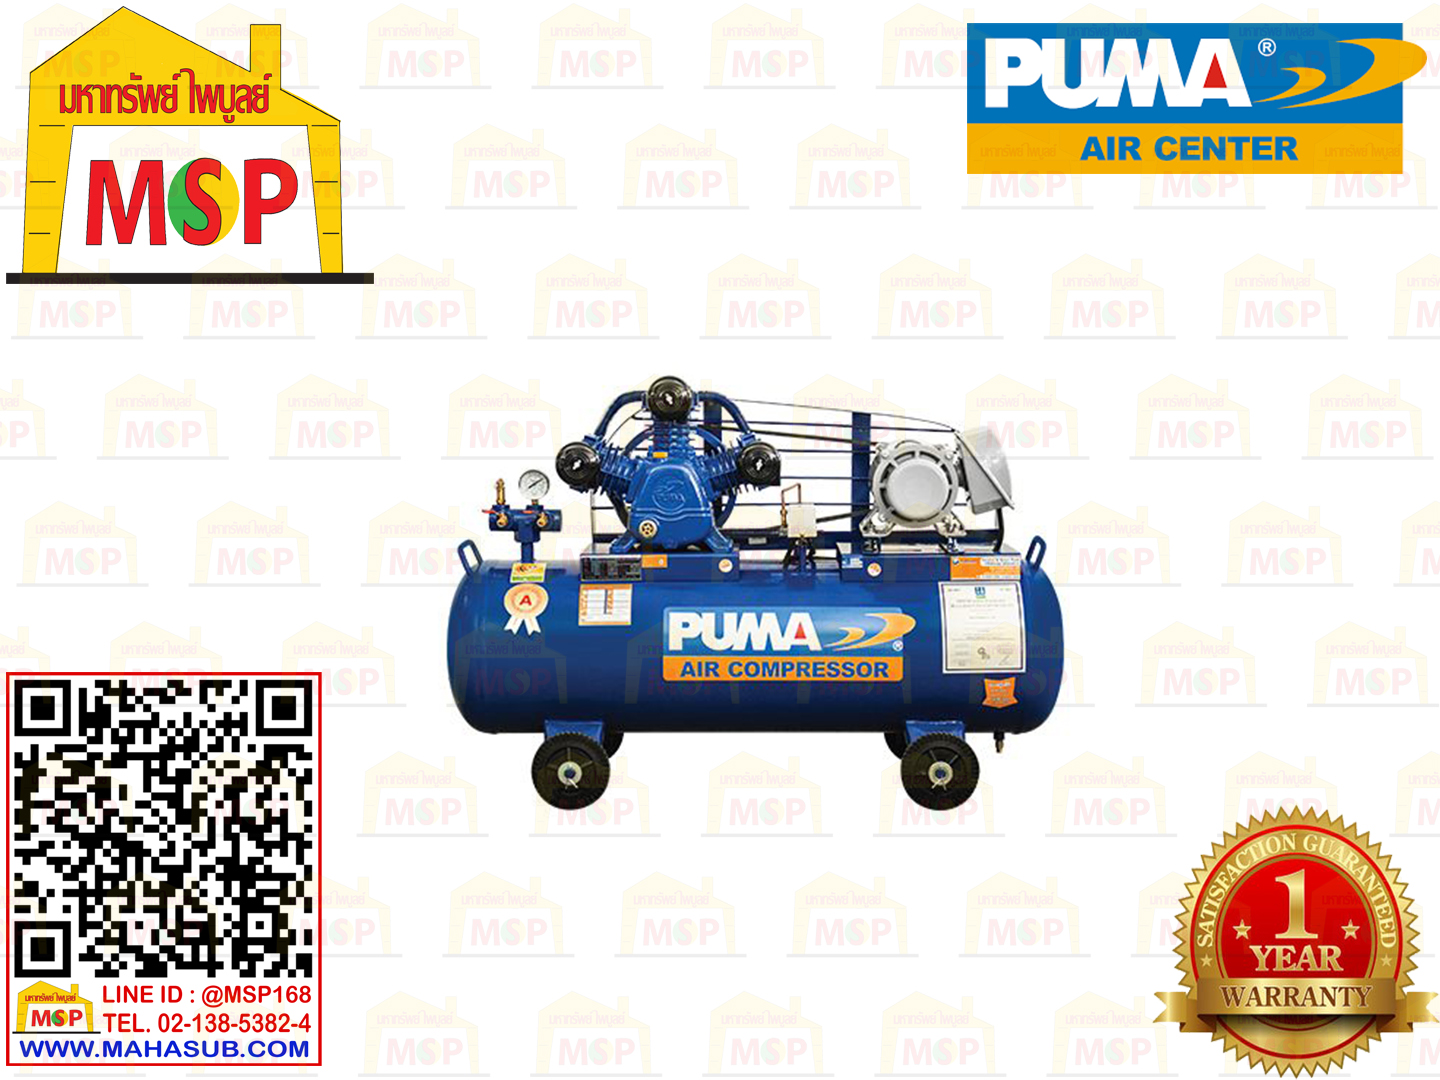 Puma เฉพาะ ถังปั๊มลมพร้อมหัวปั๊ม PP-310A 10HP 3ลูกสูบ 260L 8BAR ไม่รวมมอเตอร์